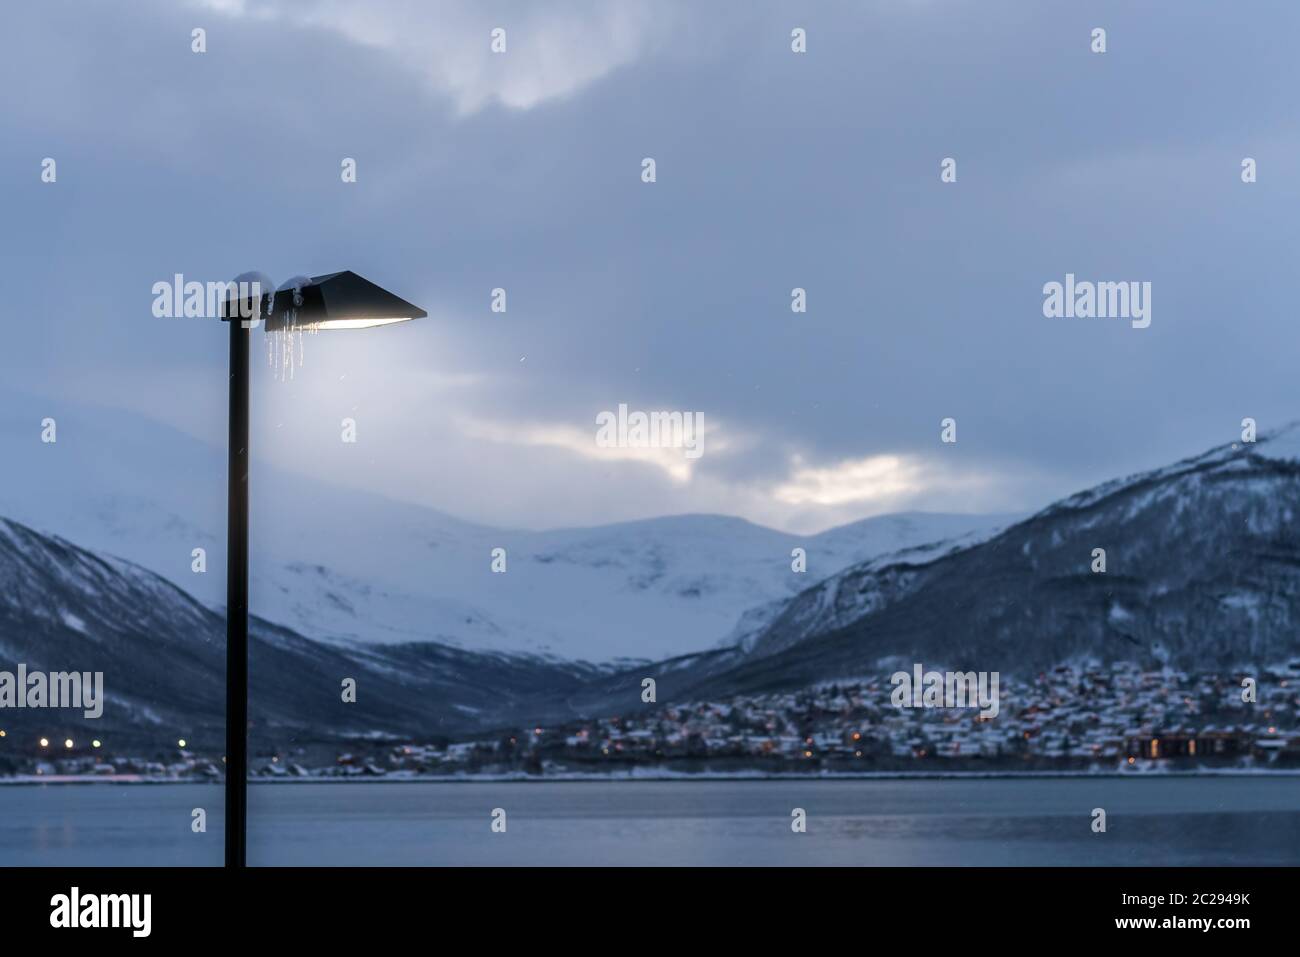 Hafen und Hafen mit dem berühmten tromso Brücke über Tromsoysundet Straße im Hintergrund, Nördliches Norwegen Stockfoto